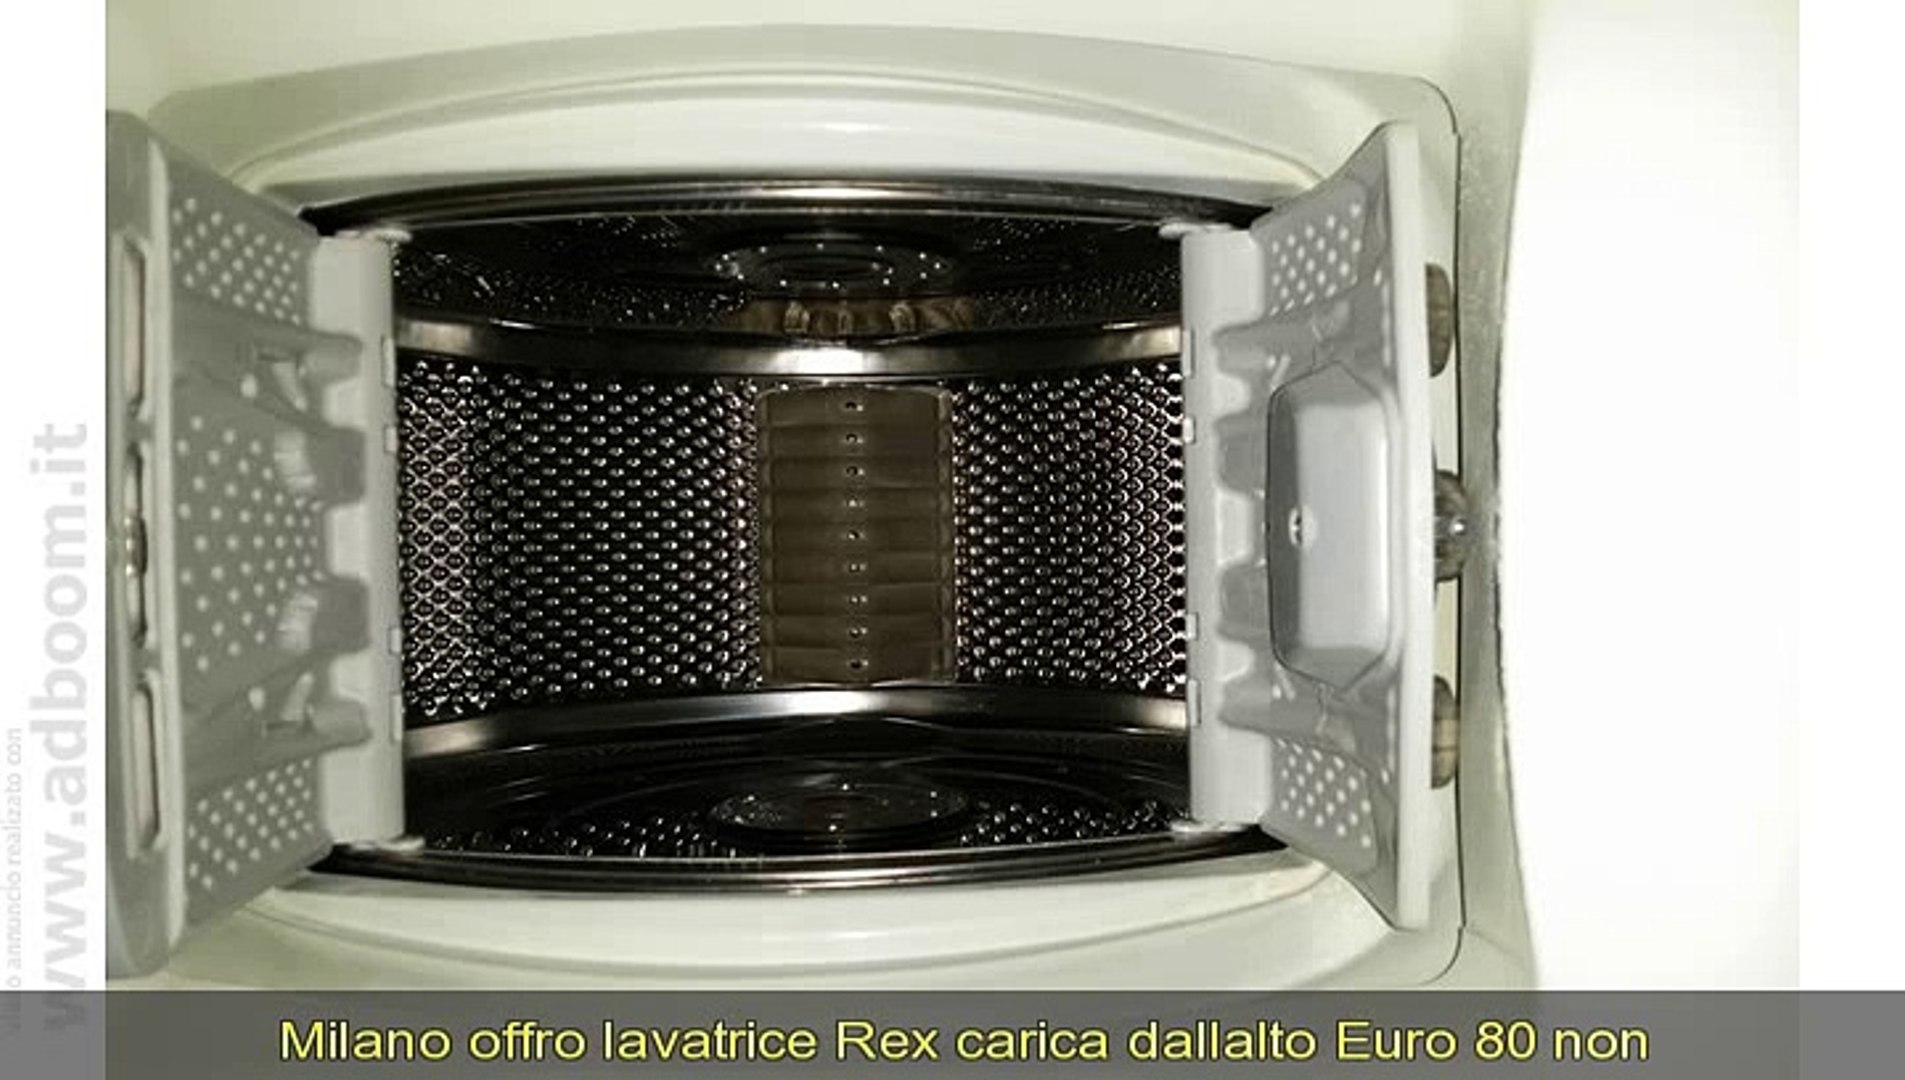 MILANO, LAVATRICE REX CARICA DALLALTO EURO 80 - Video Dailymotion